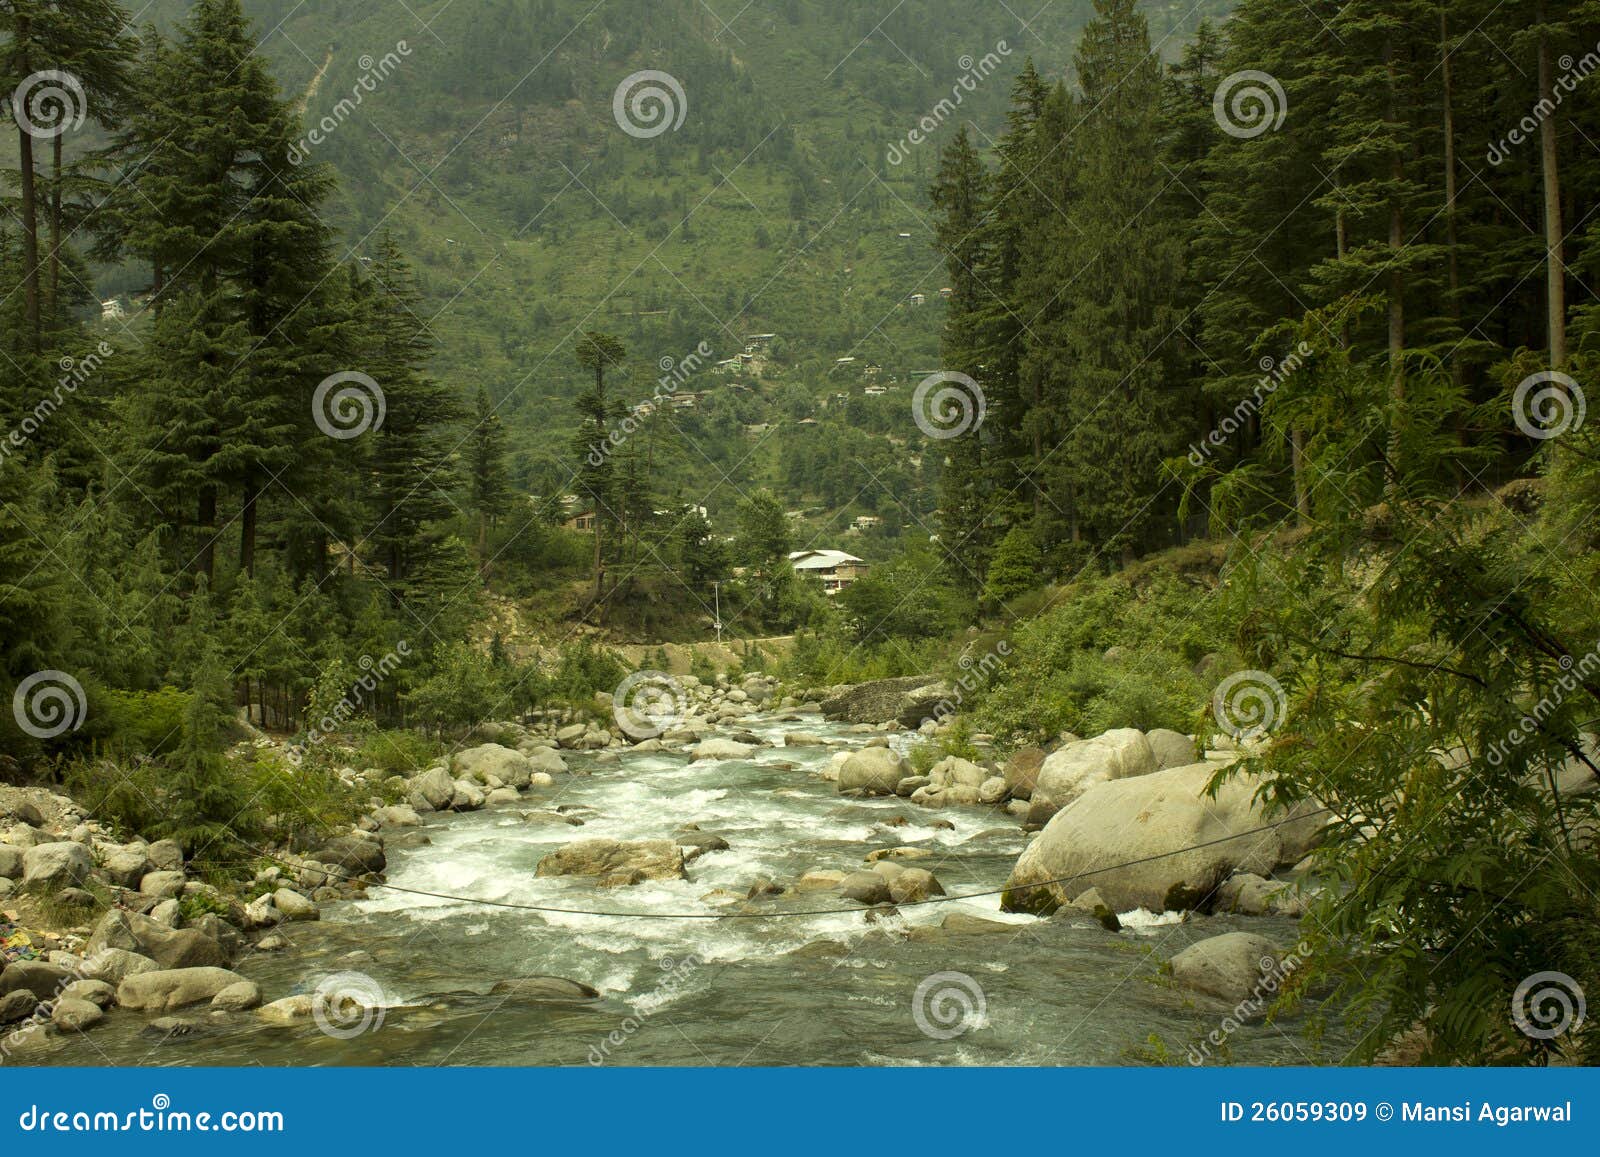 river beas, manali, himachal pradesh